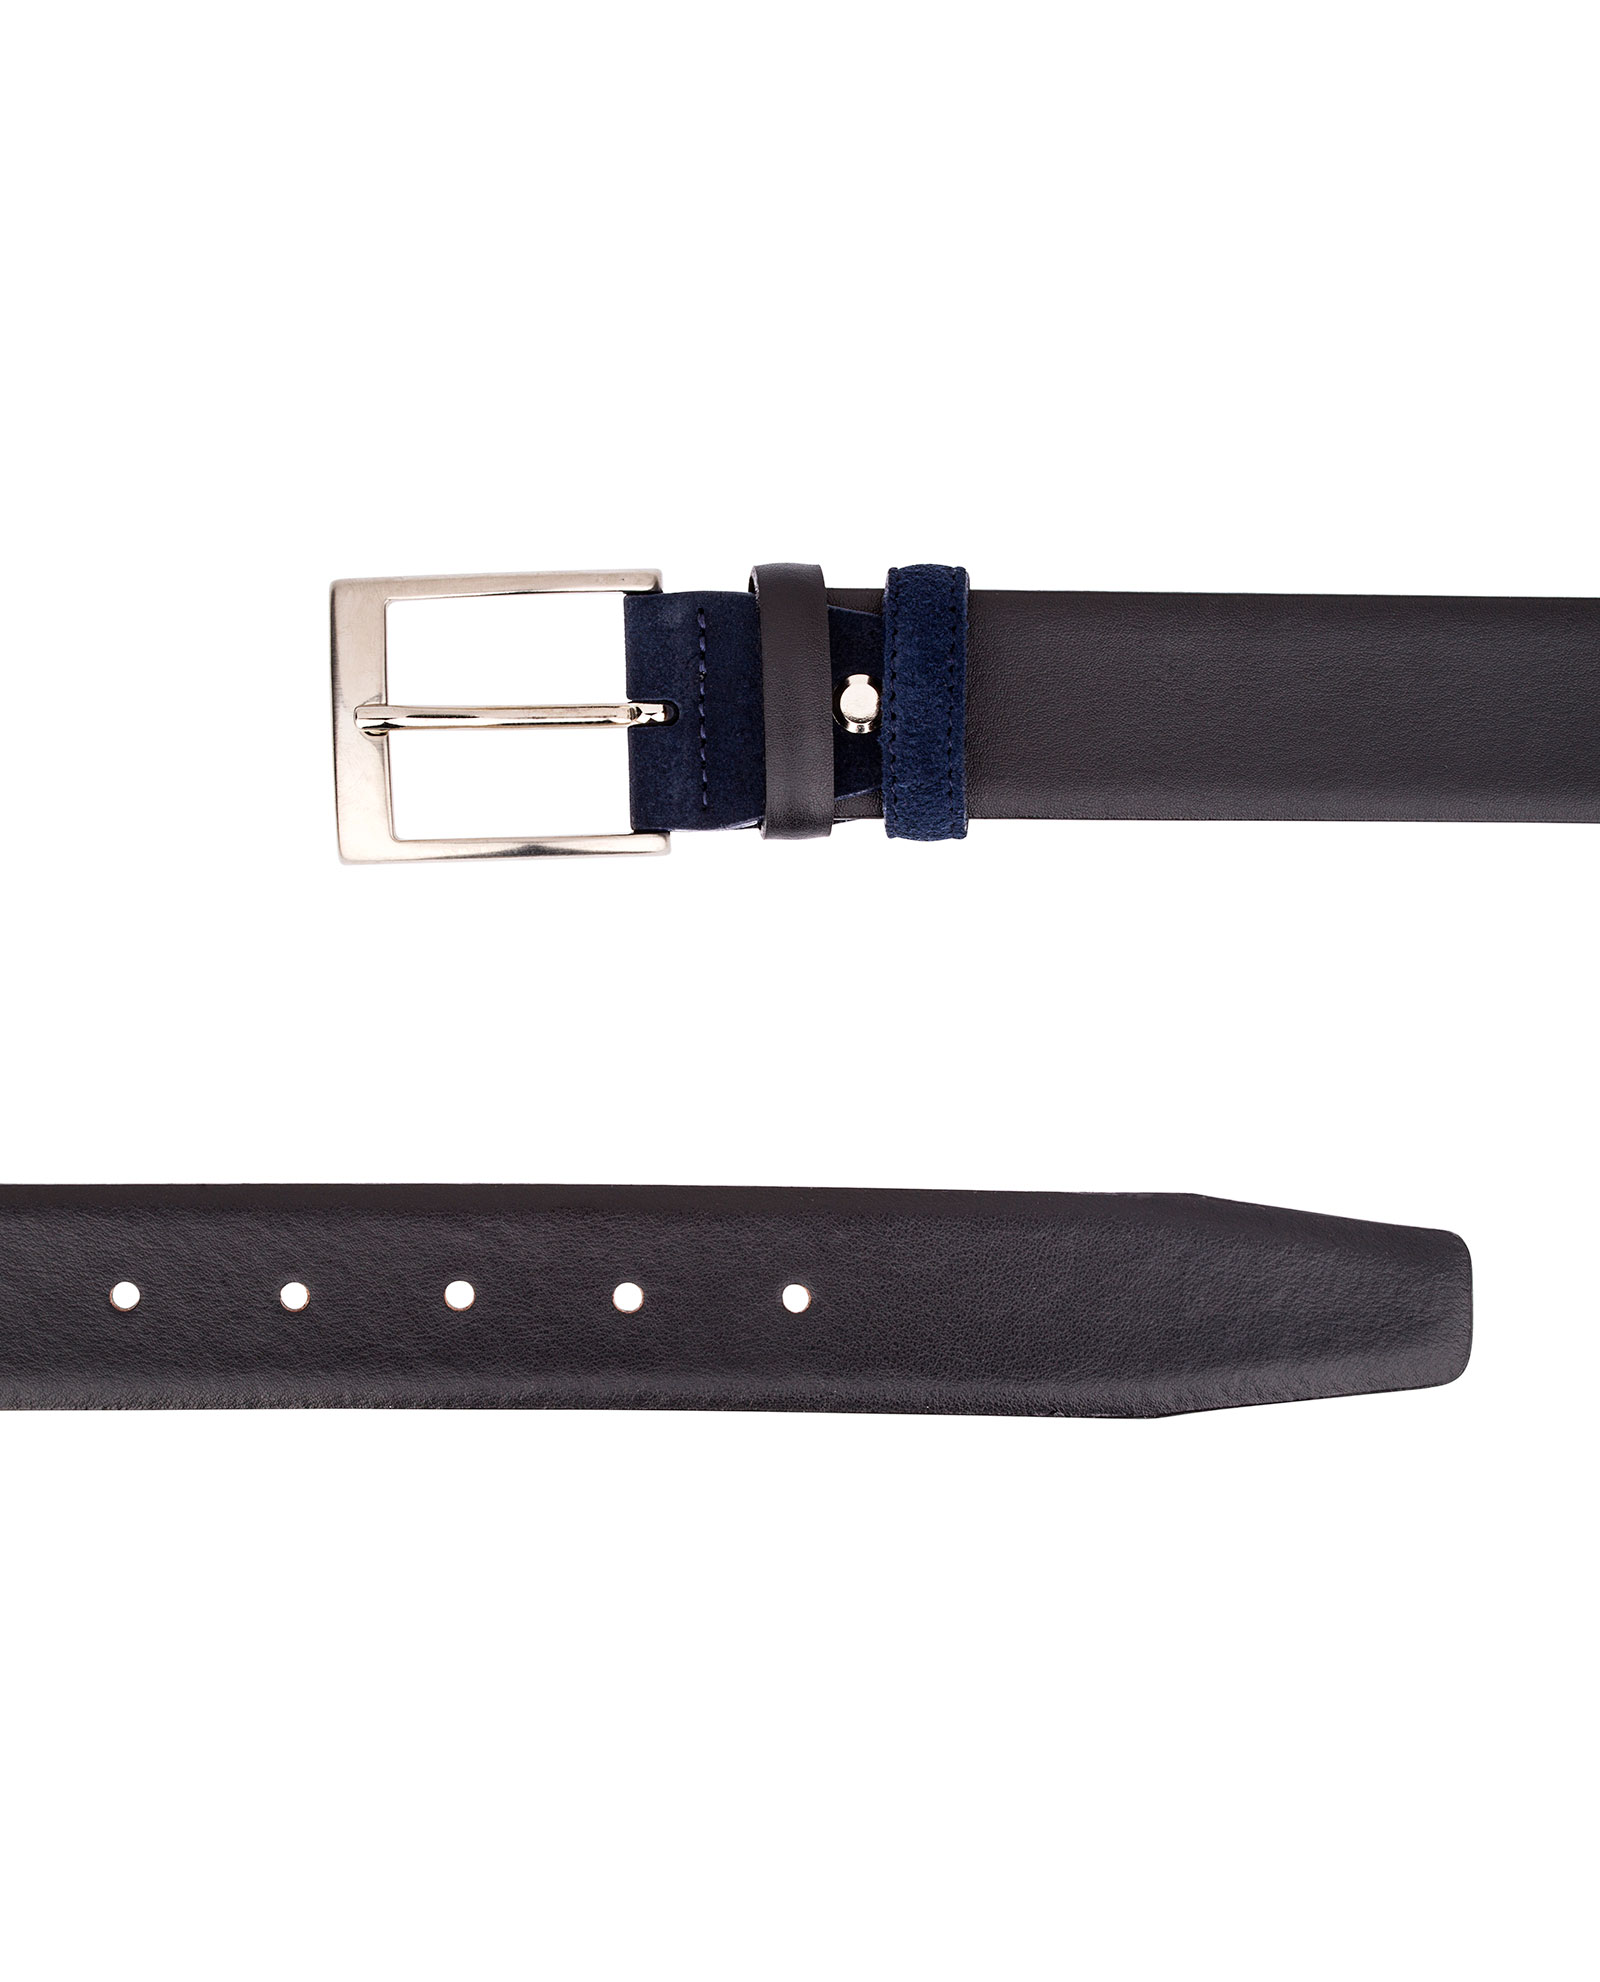 Buy Black Men's Leather Belt with Blue Suede | LeatherBeltsOnline.com